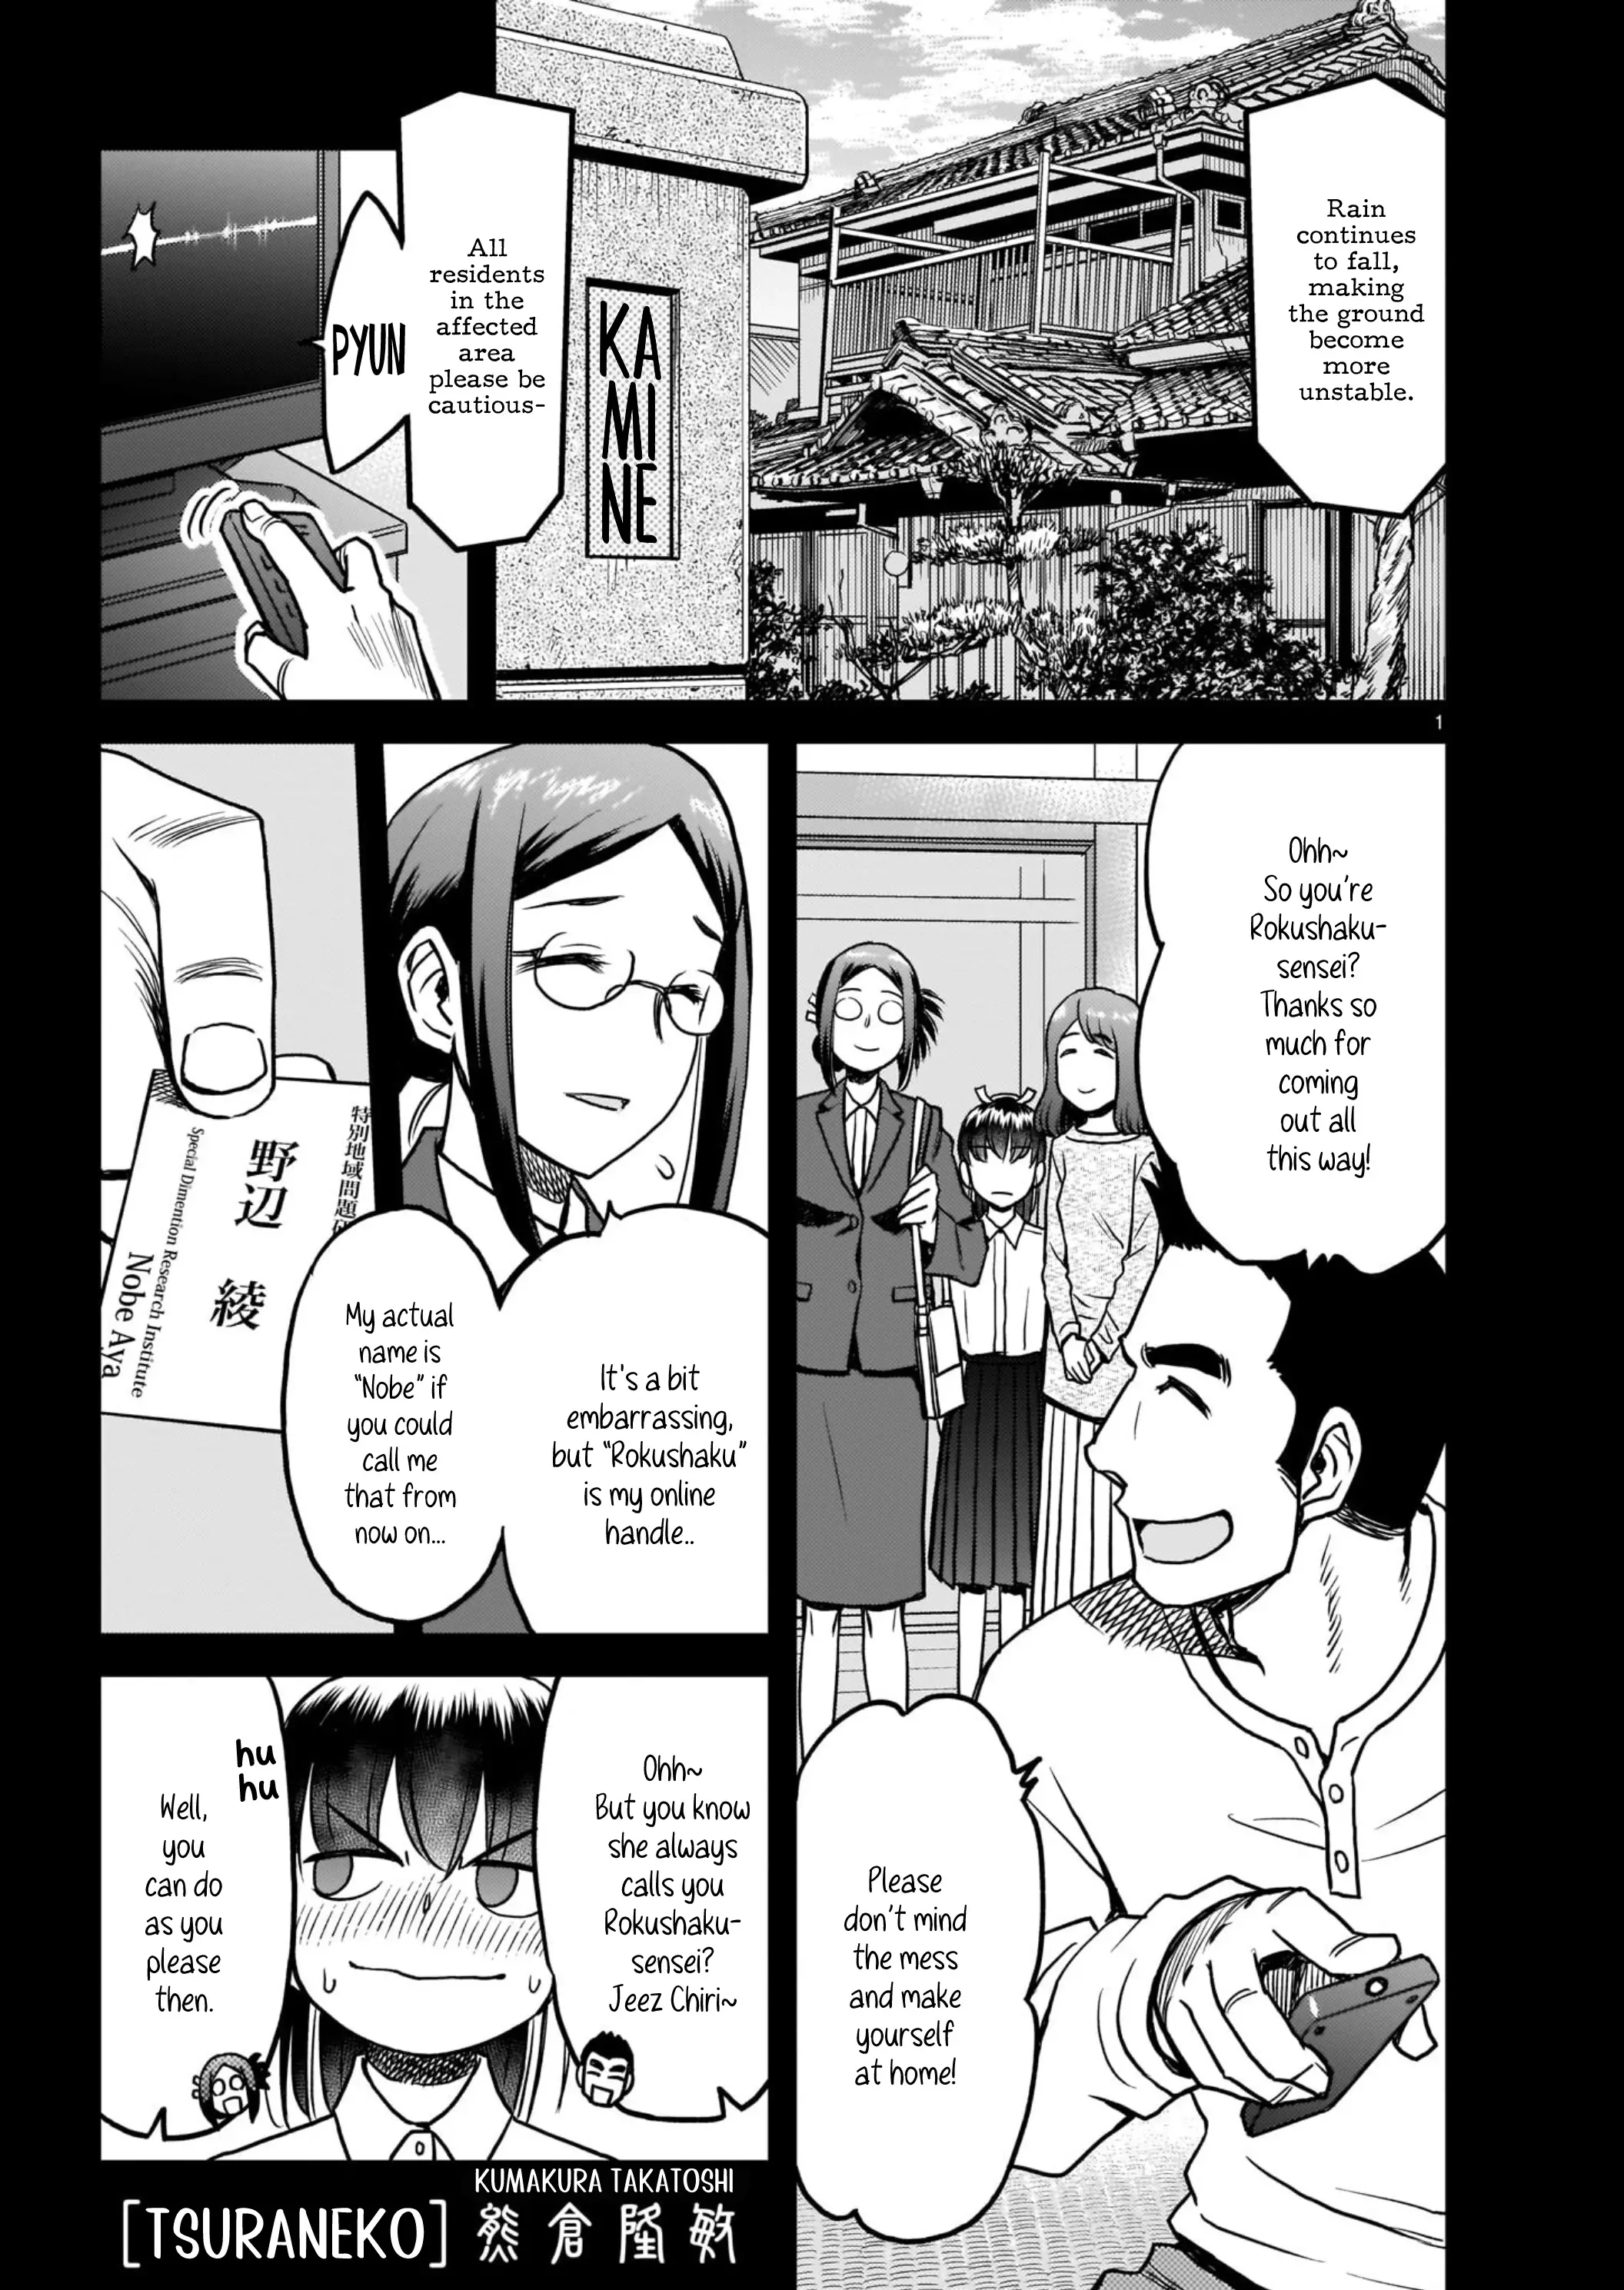 Tsuraneko - 2 page 1-36ec0770